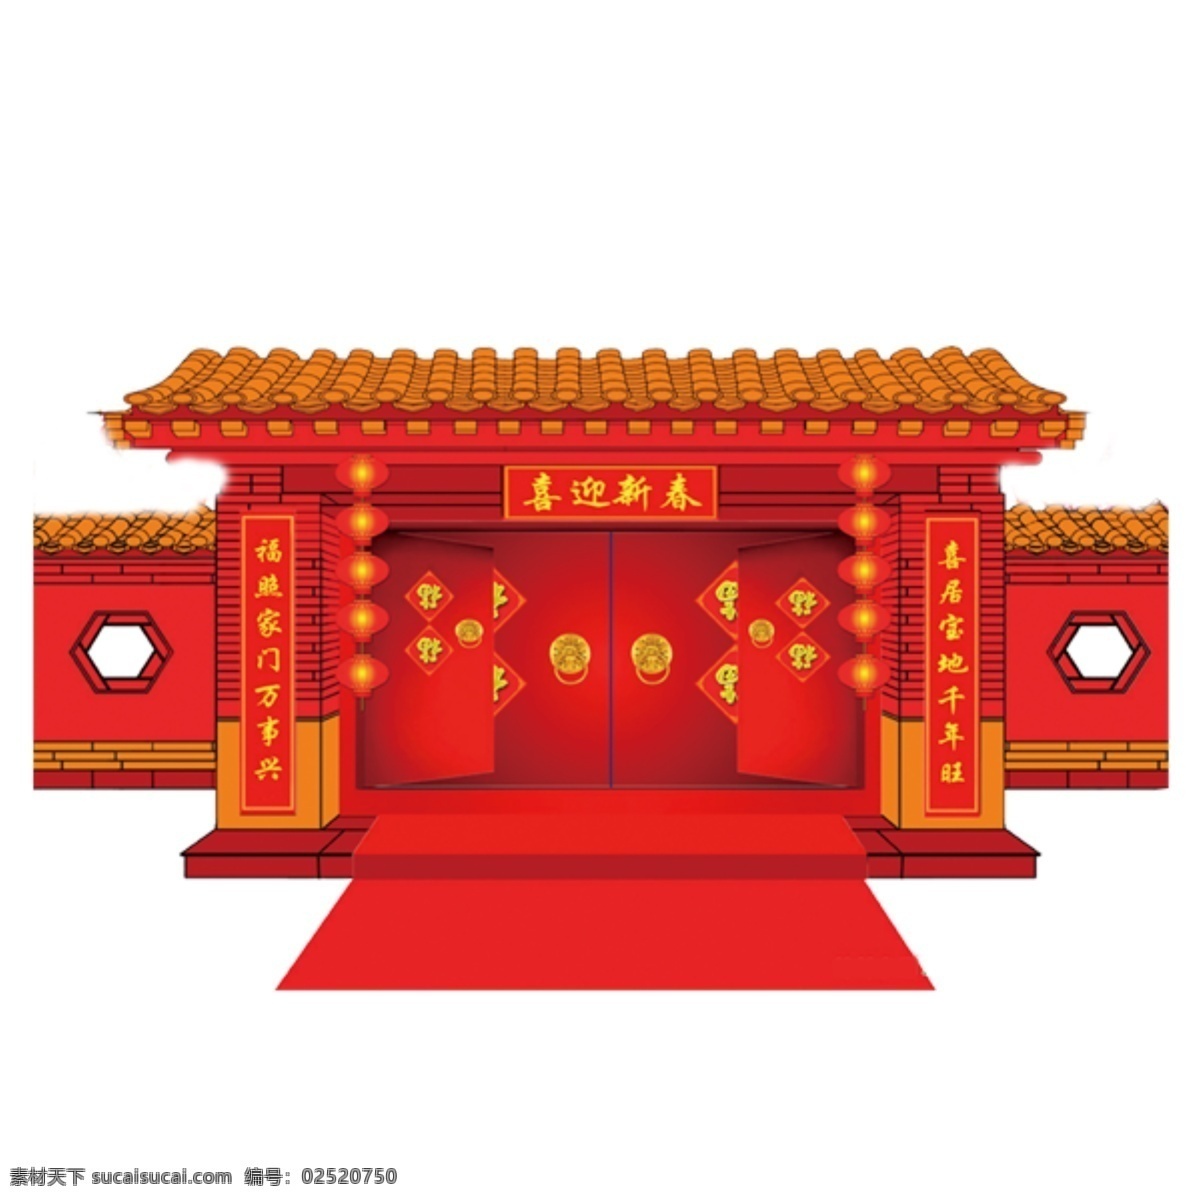 红色 喜庆 传统 大门口 元素 庆祝 屋顶 建筑 金色 光泽 窗户 门口 地毯 对联 年货节 节日